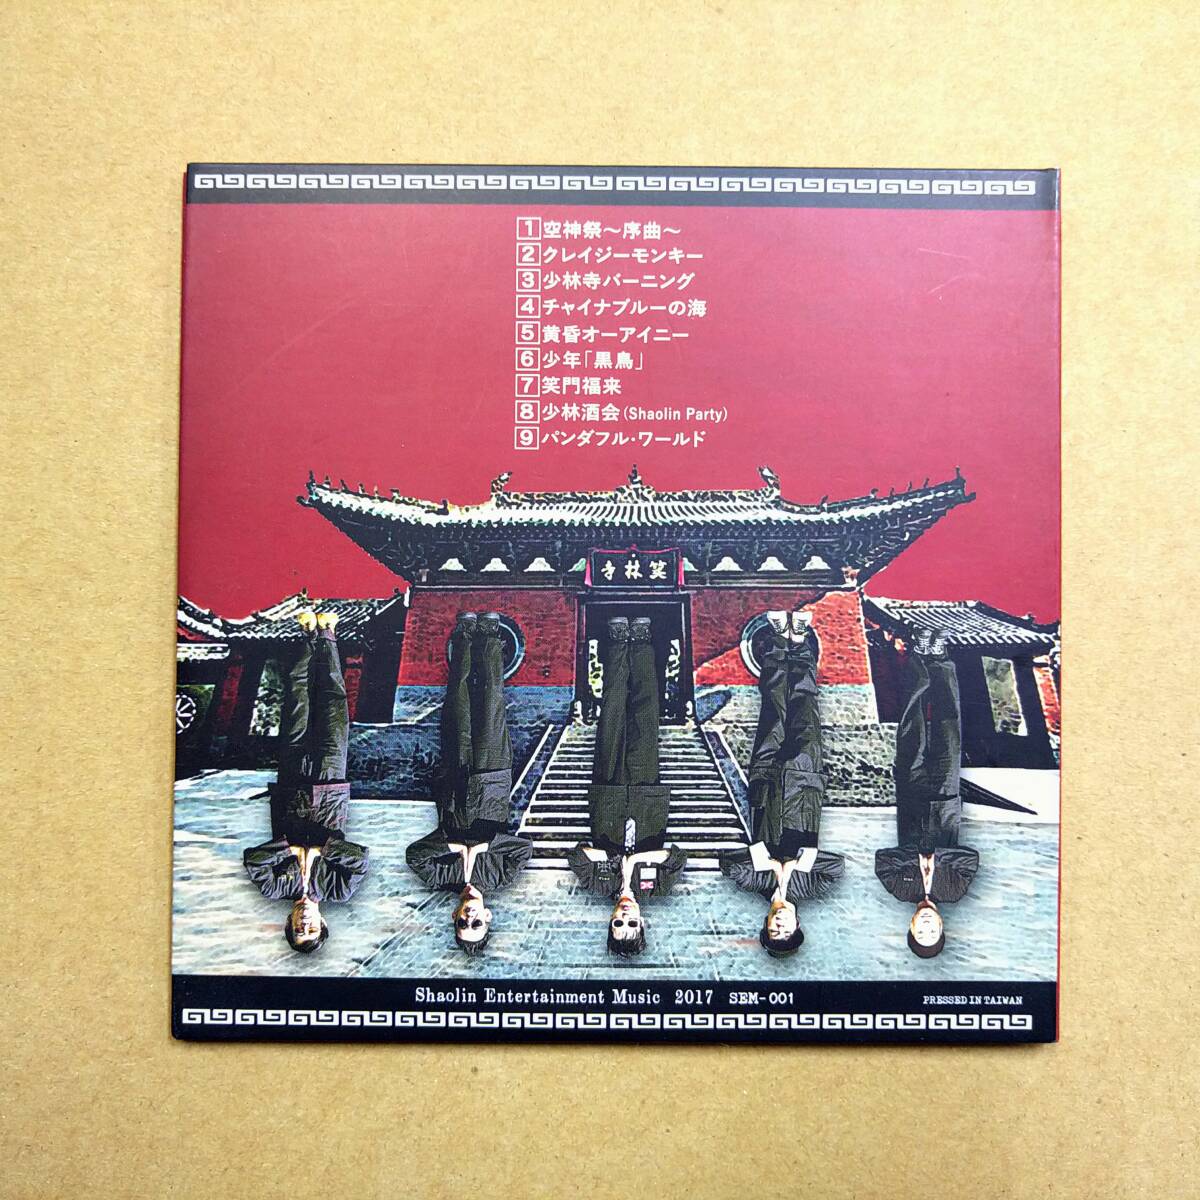 少林兄弟 / 笑門福来 [CD] 2017年盤 SEM-001 ロックンロール/ロカビリー/サイドワン/ザ・コルツ_画像2